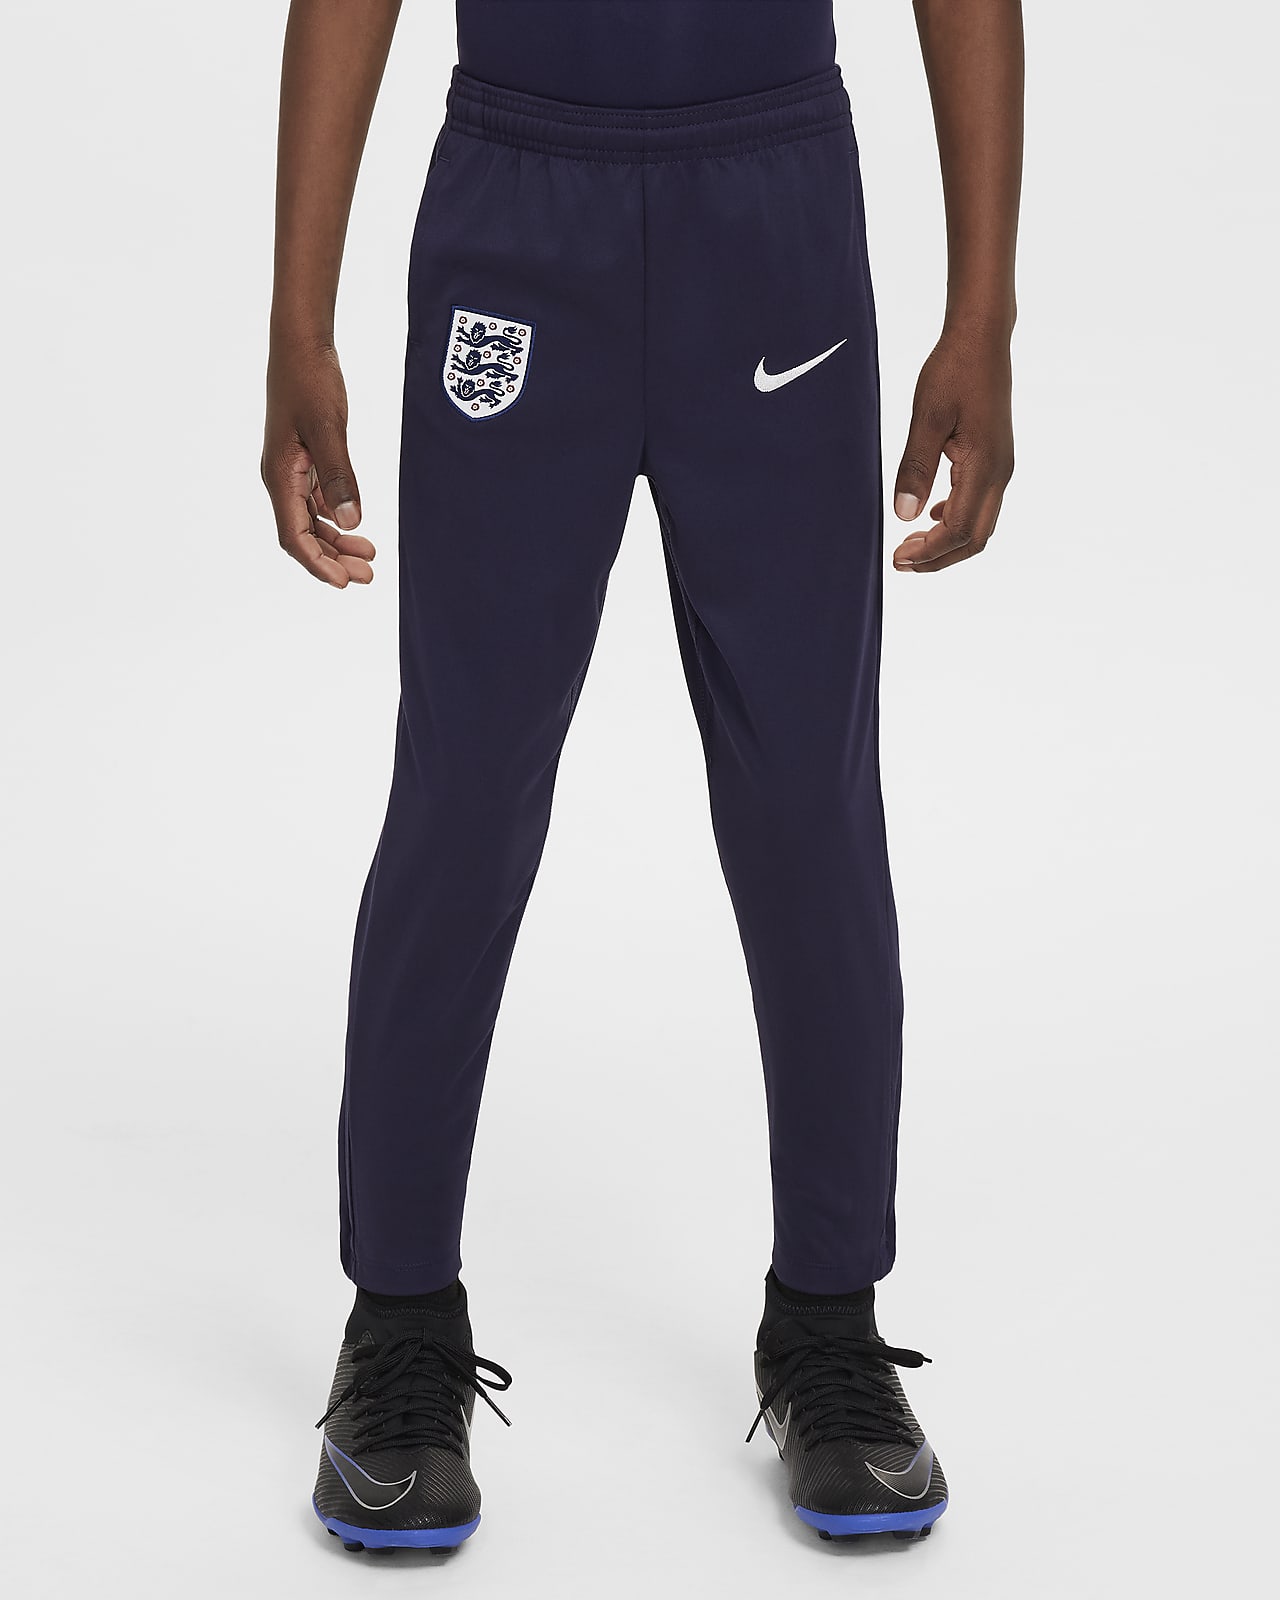 Ποδοσφαιρικό πλεκτό παντελόνι Nike Dri-FIT Αγγλία Academy Pro για μικρά παιδιά